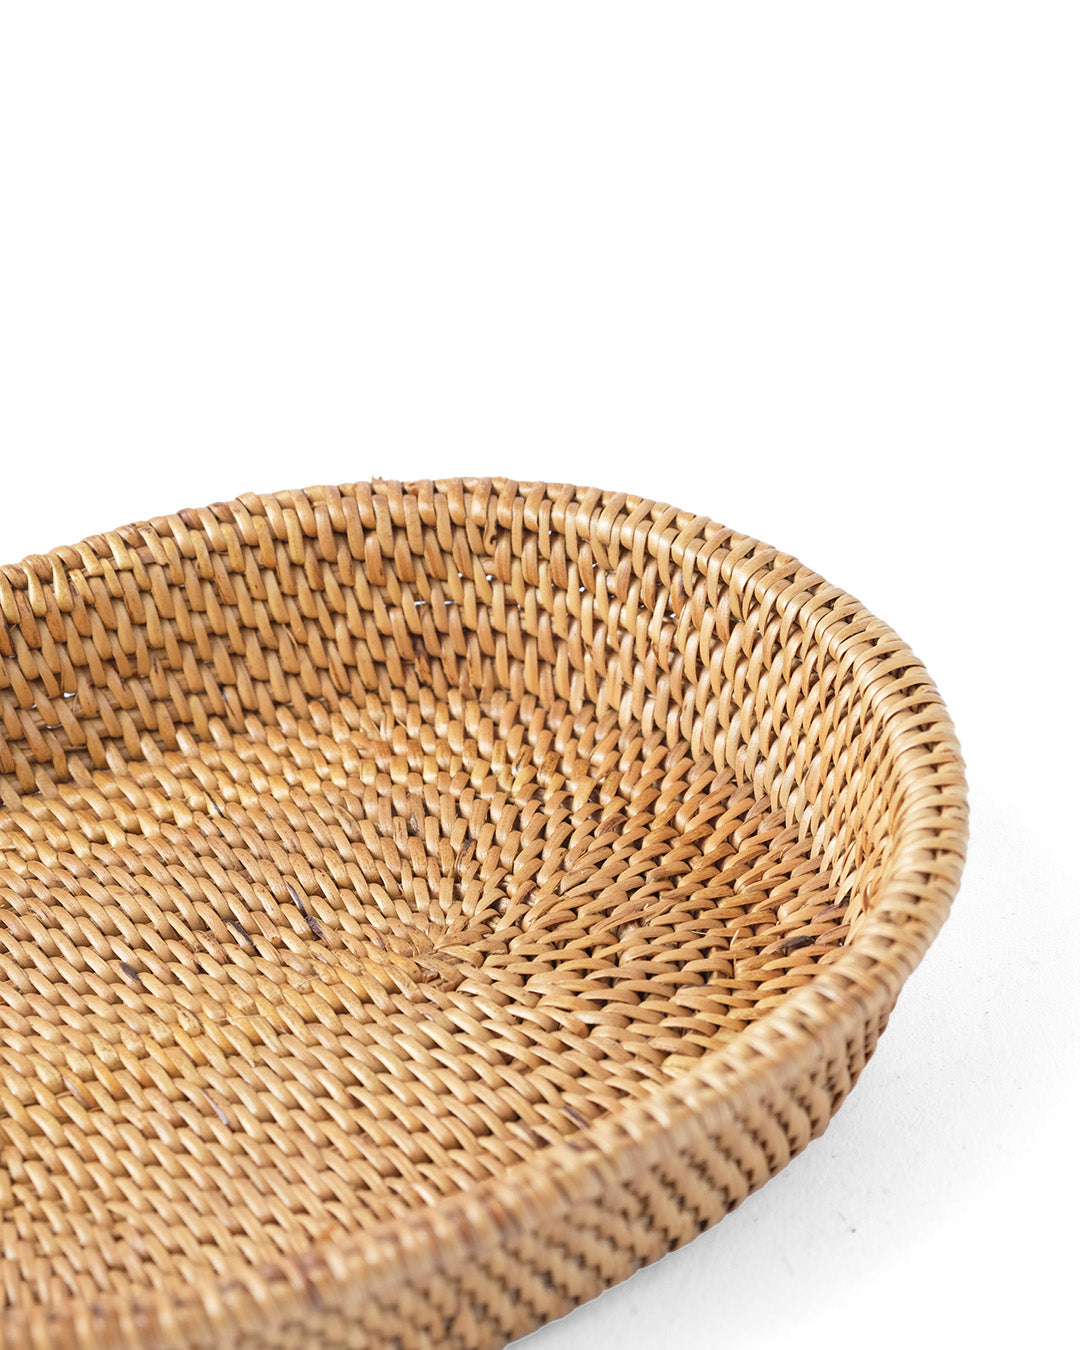 Cesta de ratán 100% natural de halus Garuk decorativa, hecho a mano con acabado natural con forma ovalada, 25 cm x 22 cm, fabricado en Indonesia